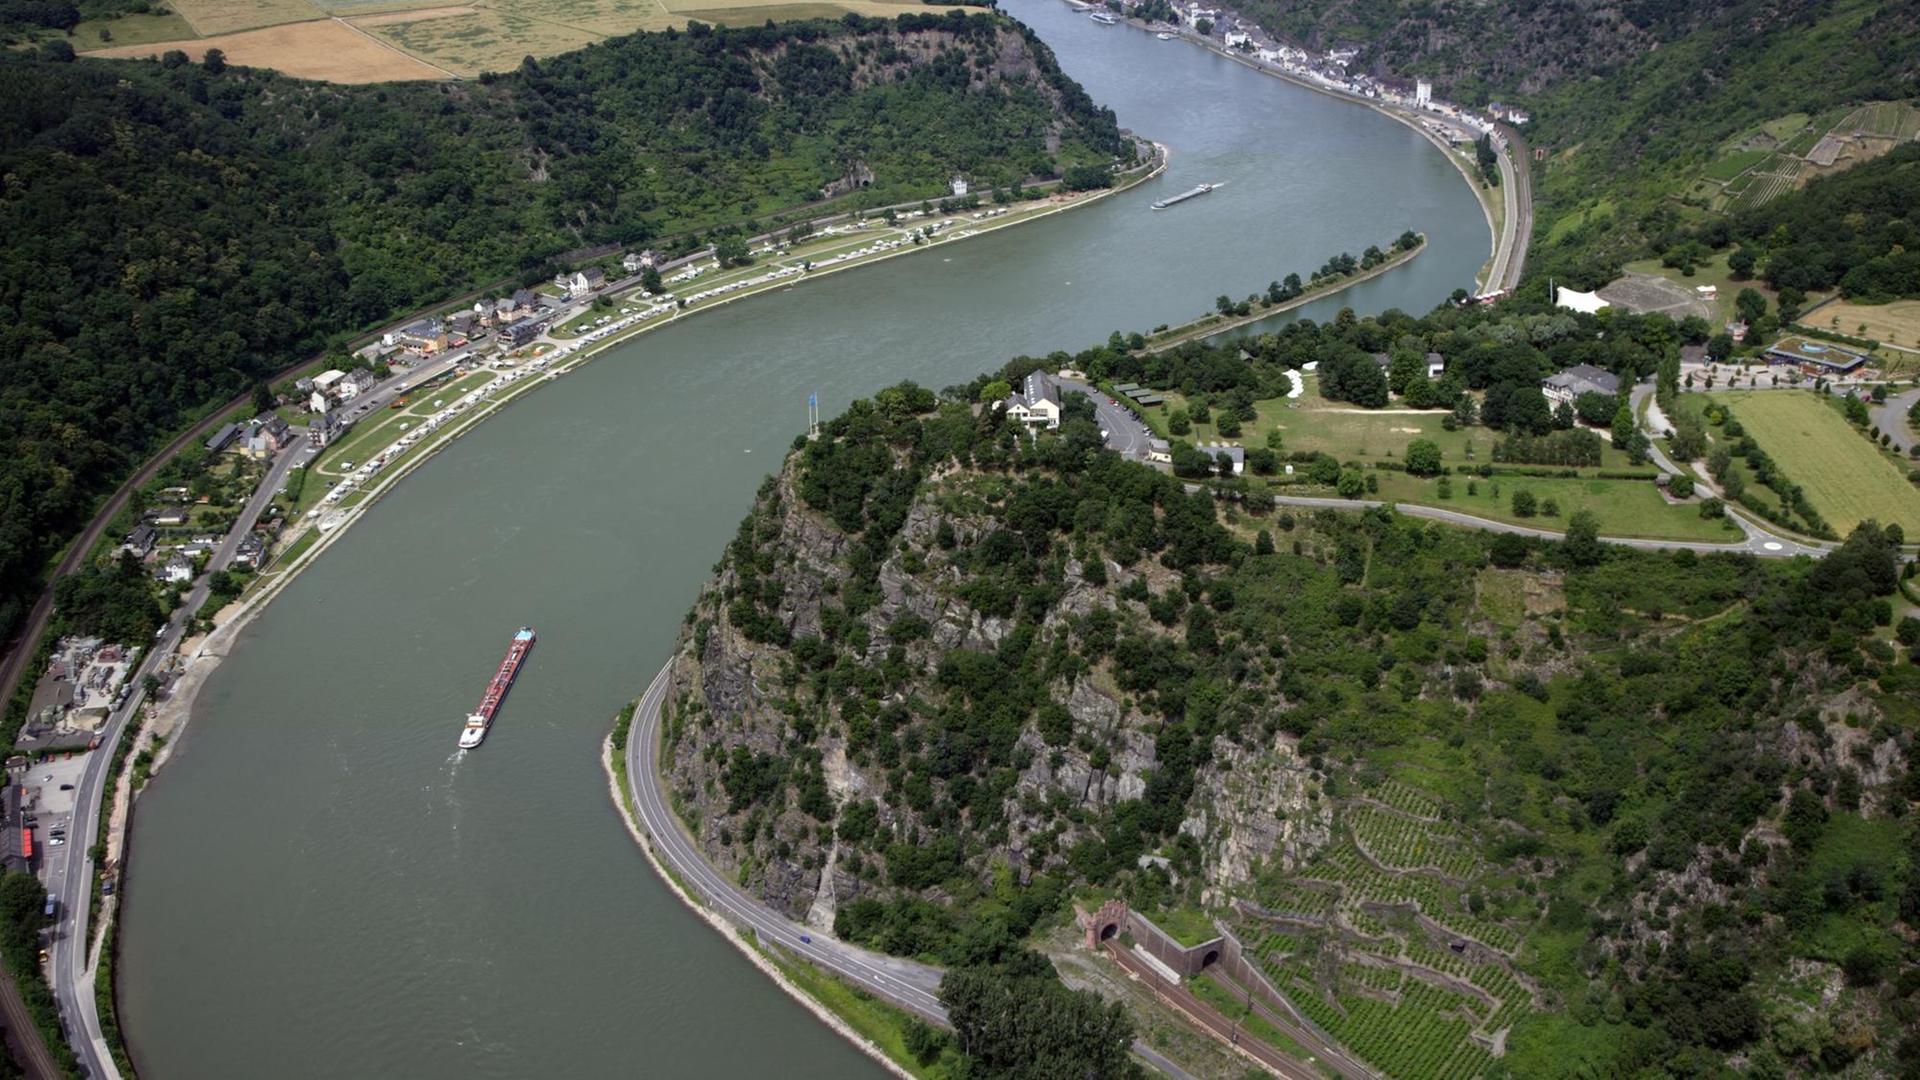 Luftbild des Loreleyfelsen bei St. Goar inmitten des UNESCO-Weltkulturerbegebiets Mittelrheintal